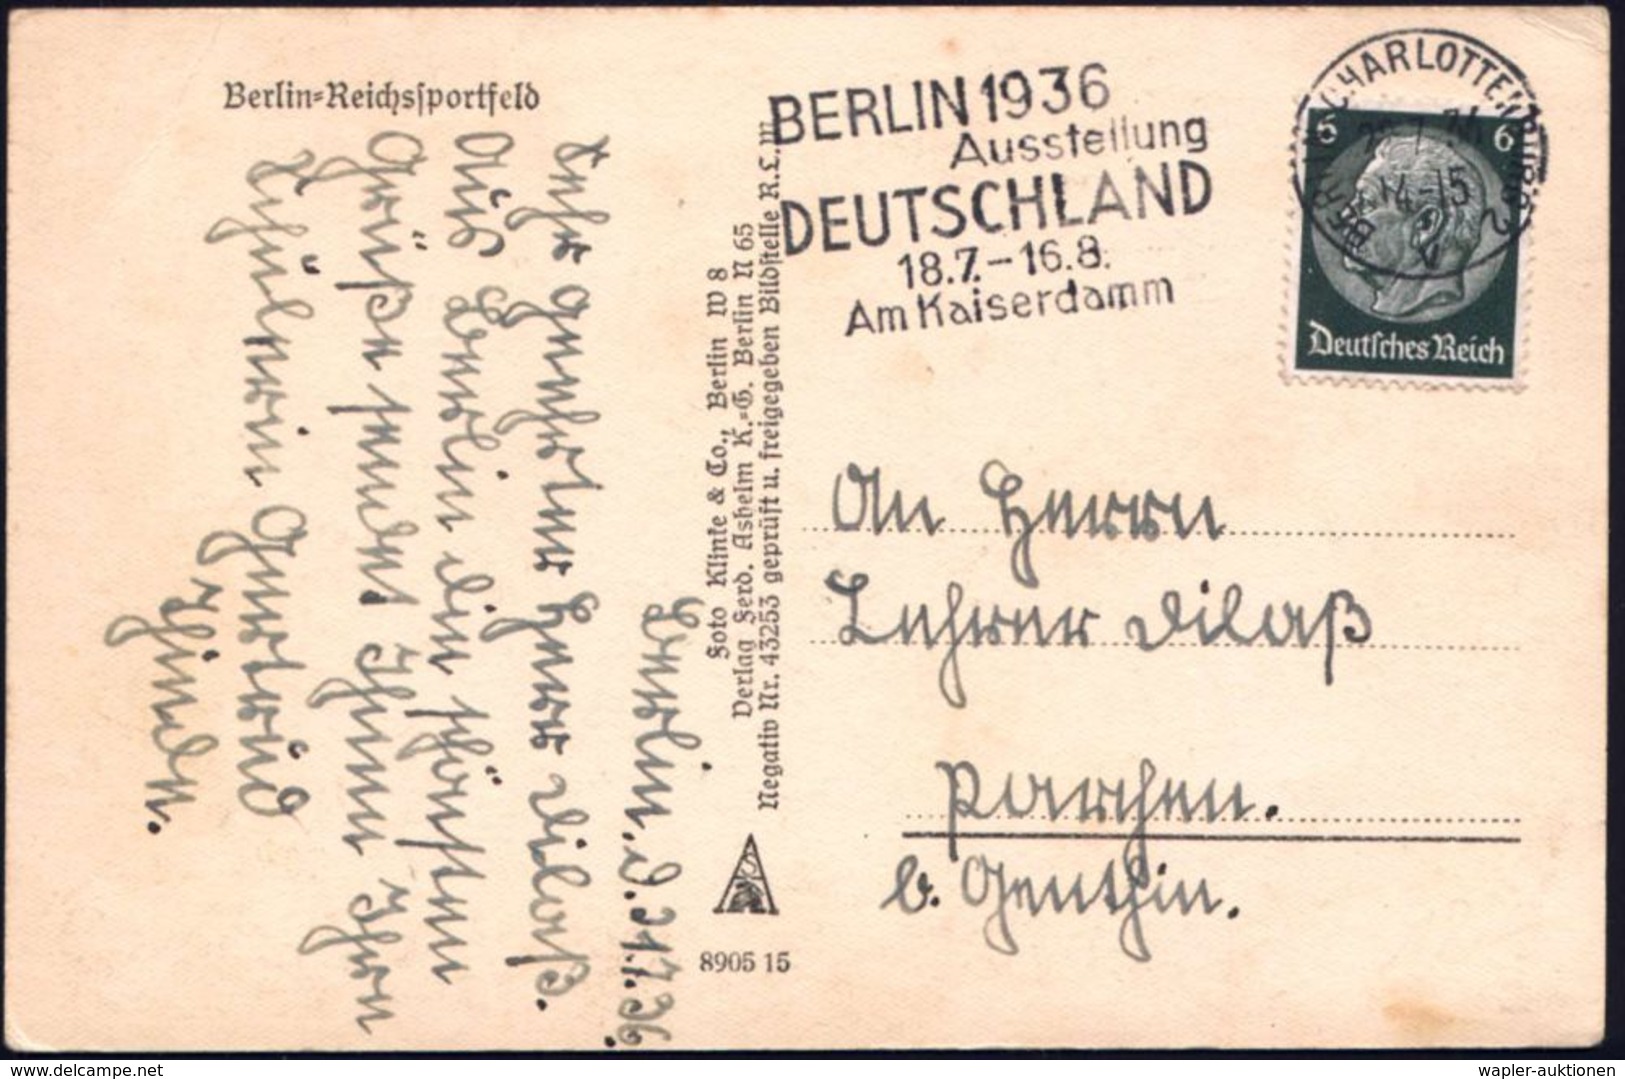 BERLIN-CHARLOTTENBURG 2/ V/ BERLIN 1936/ Ausstellung/ DEUTSCHLAND 1936 (22.7.) MWSt Klar Auf S/w.-Foto-Ak: Reichssportfe - Ete 1936: Berlin